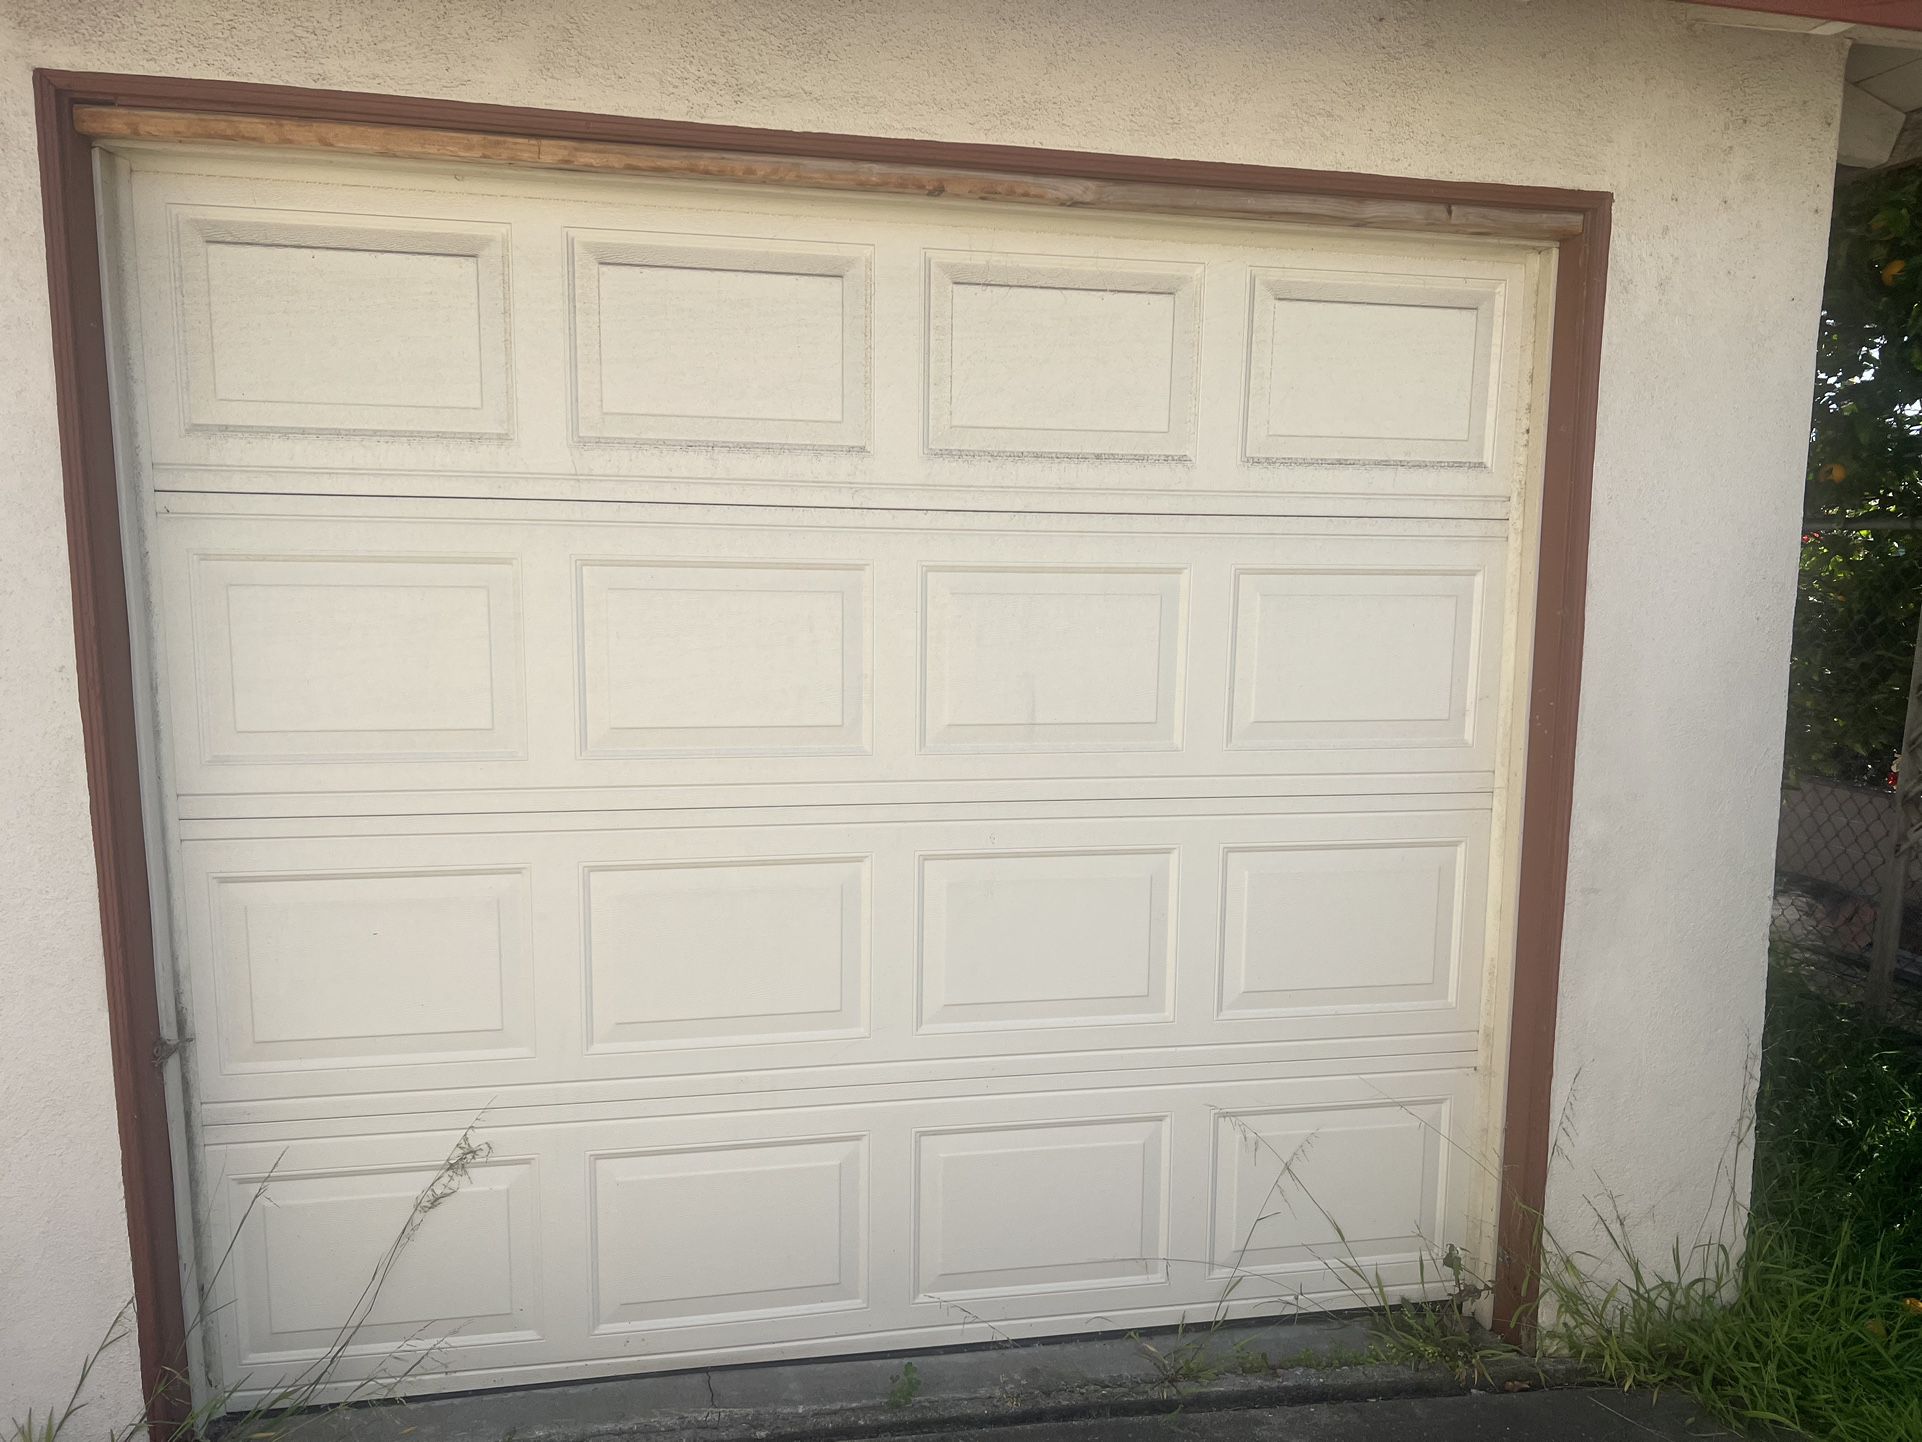  Garage Door